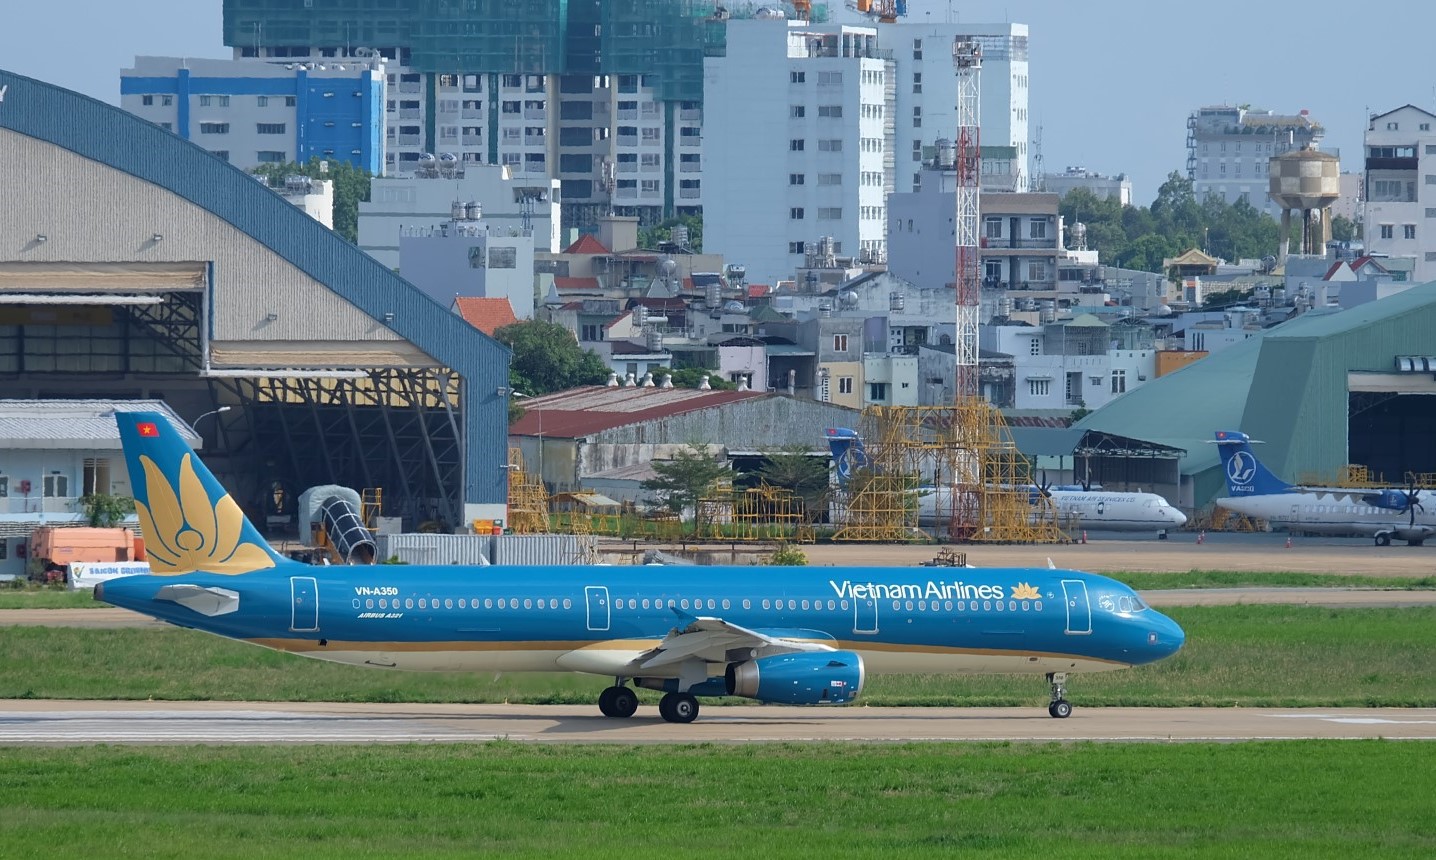 Năm 2018, Vietnam Airlines đã vận chuyển trên 350 nghìn lượt khách giữa Hà Nội, TP Hồ Chí Minh và Busan, góp phần thúc đẩy du lịch, thương mại giữa Việt Nam và Hàn Quốc.